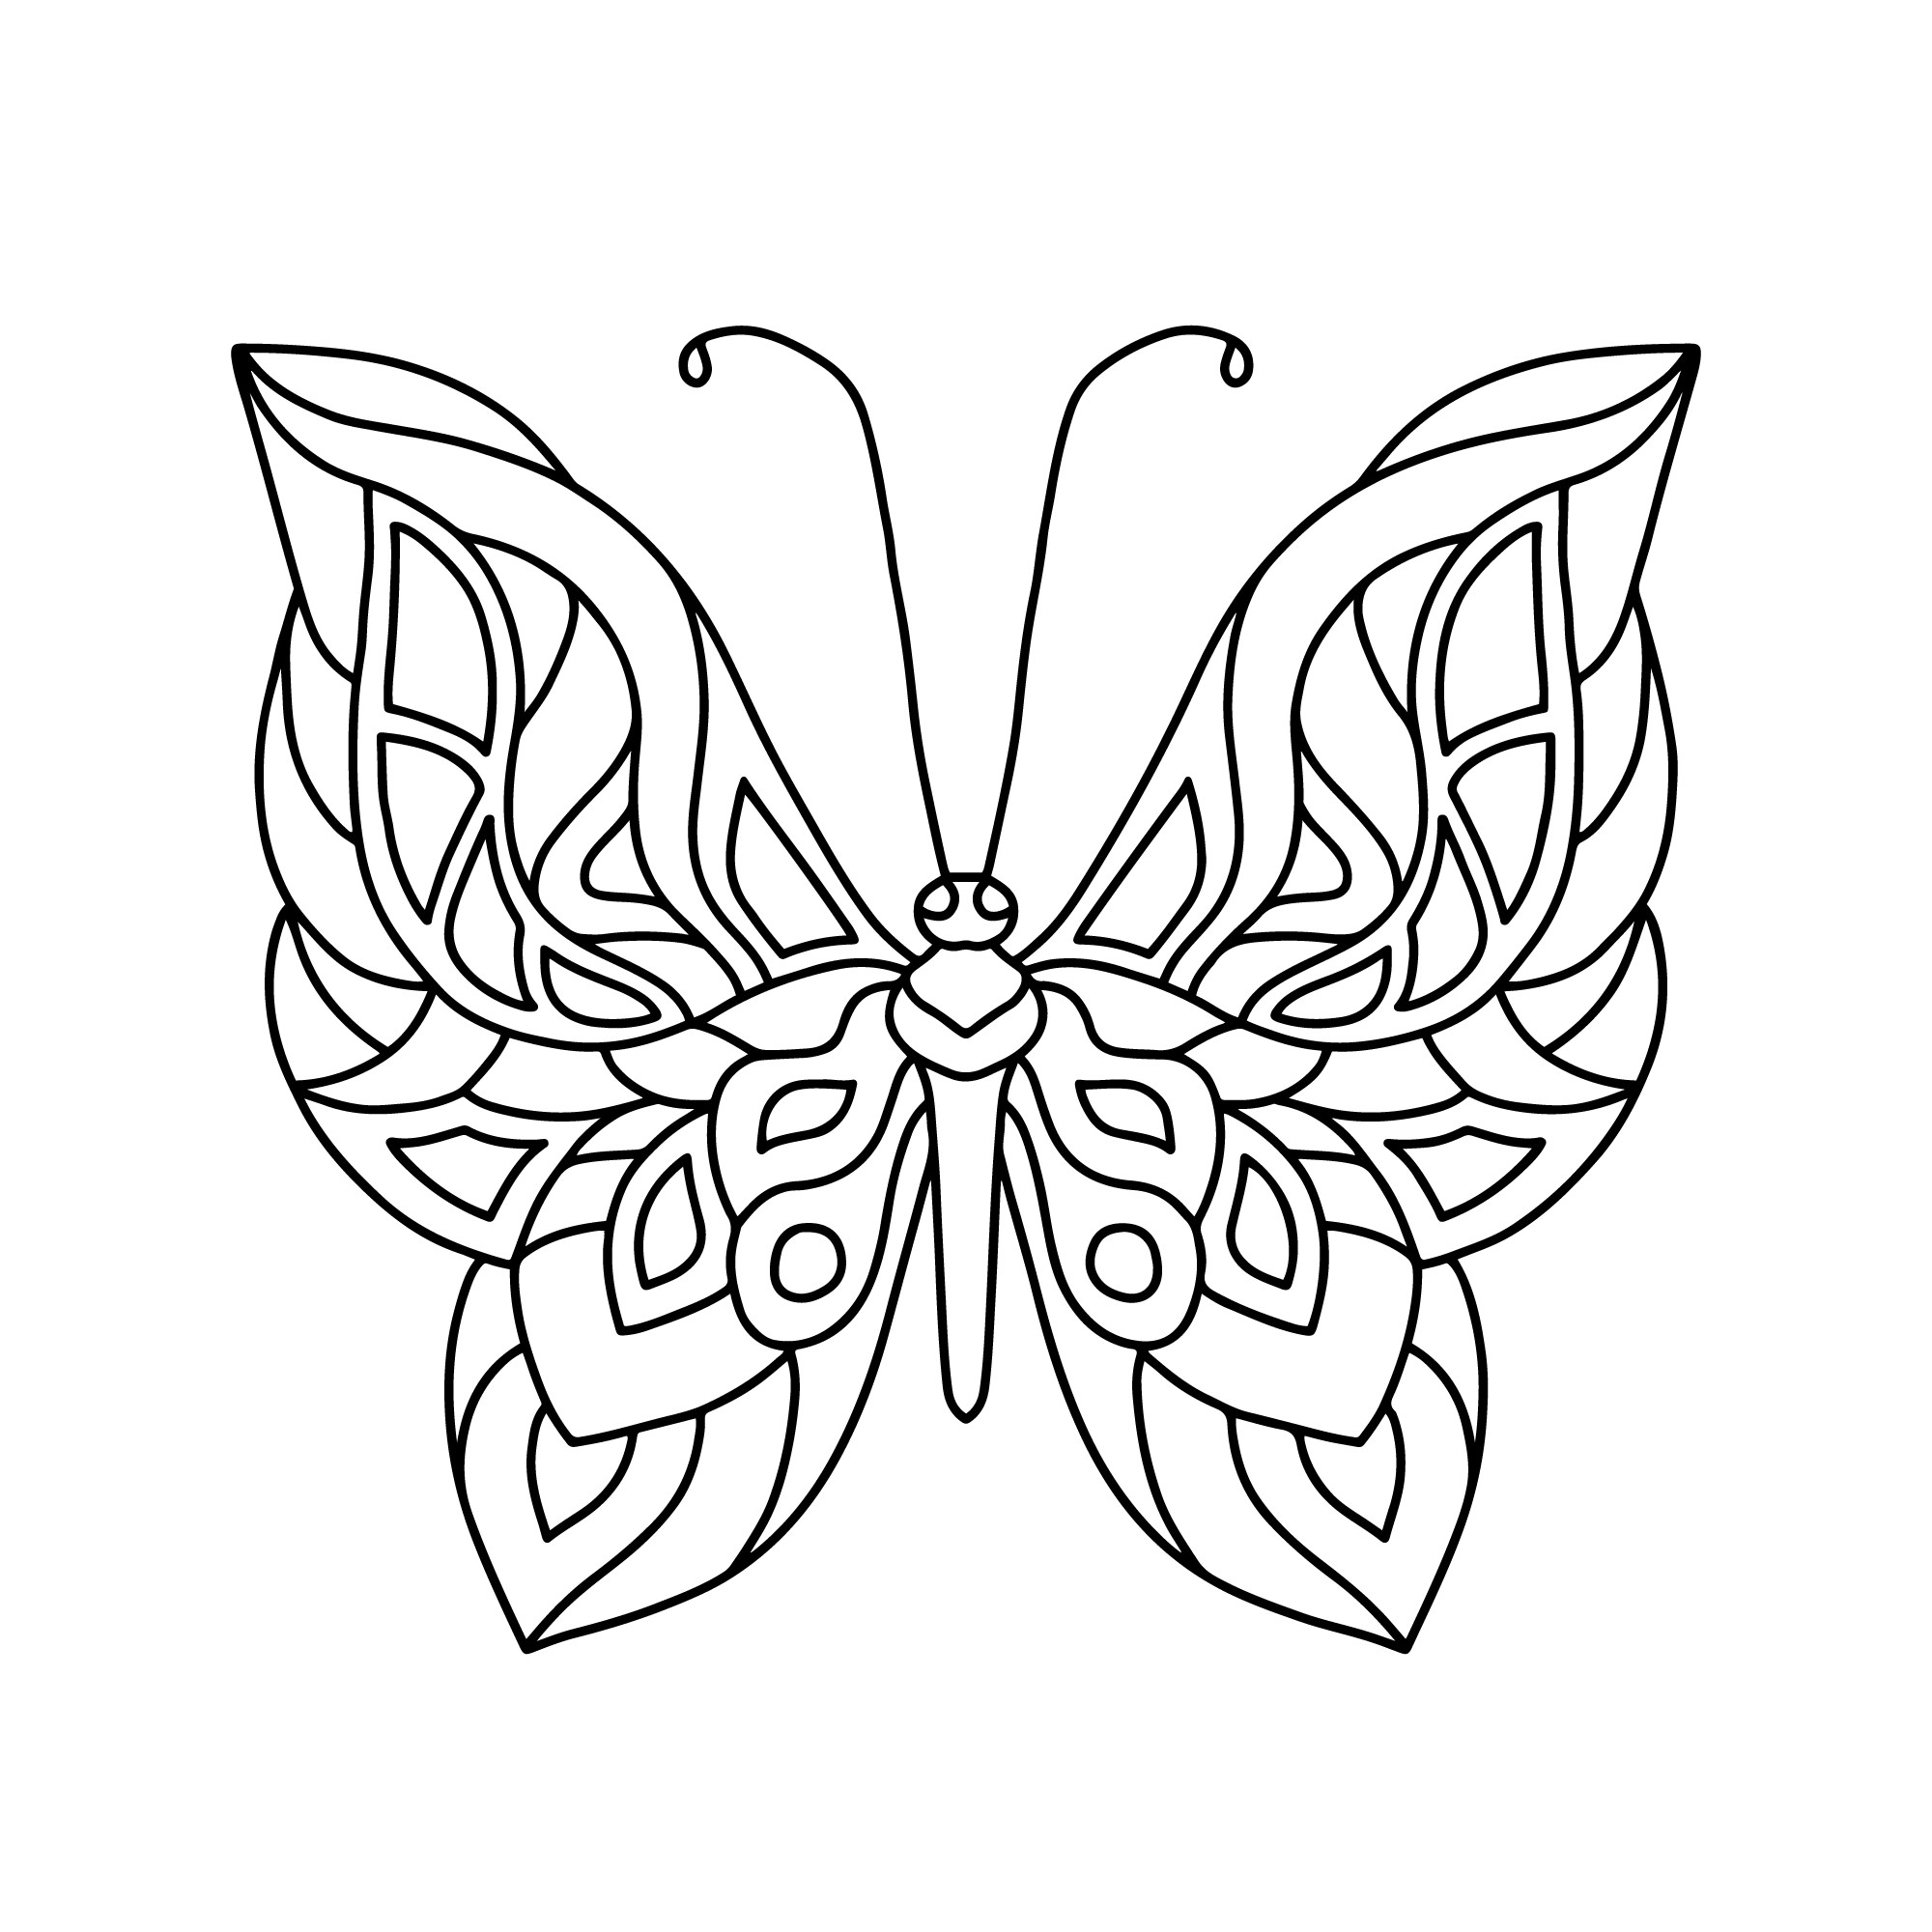 Раскраска для детей: бабочка с узорчатыми крыльями и длинными усиками